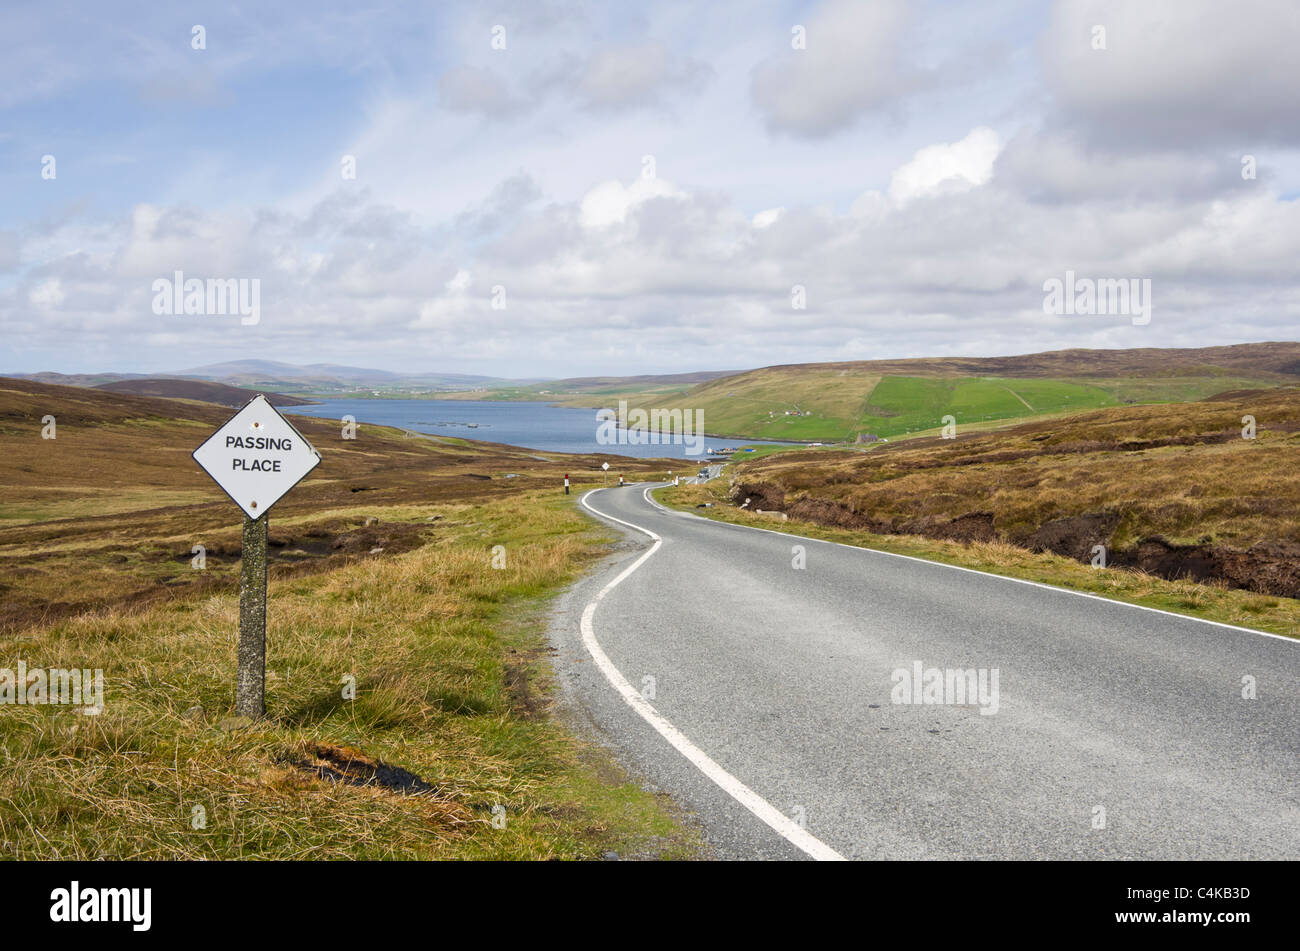 Ort und Zeichen auf einer ruhigen einspurigen Landstraße mit Plätzen für die Weitergabe übergeben. Voe Shetland Inseln Schottland UK Großbritannien Stockfoto